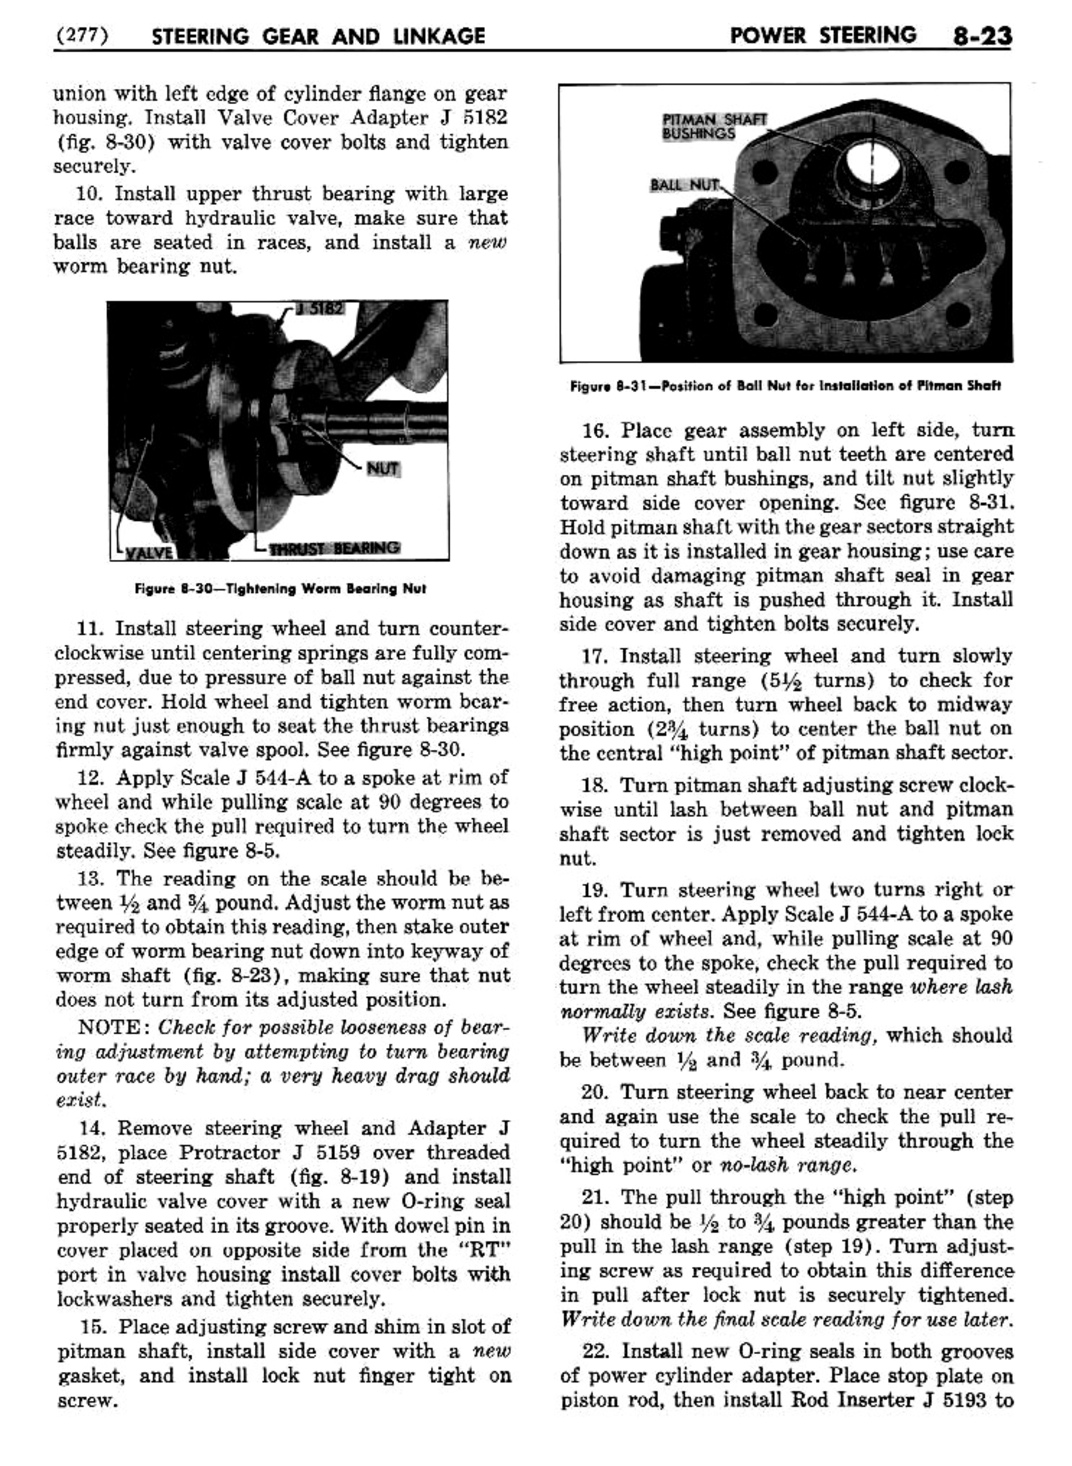 n_09 1954 Buick Shop Manual - Steering-023-023.jpg